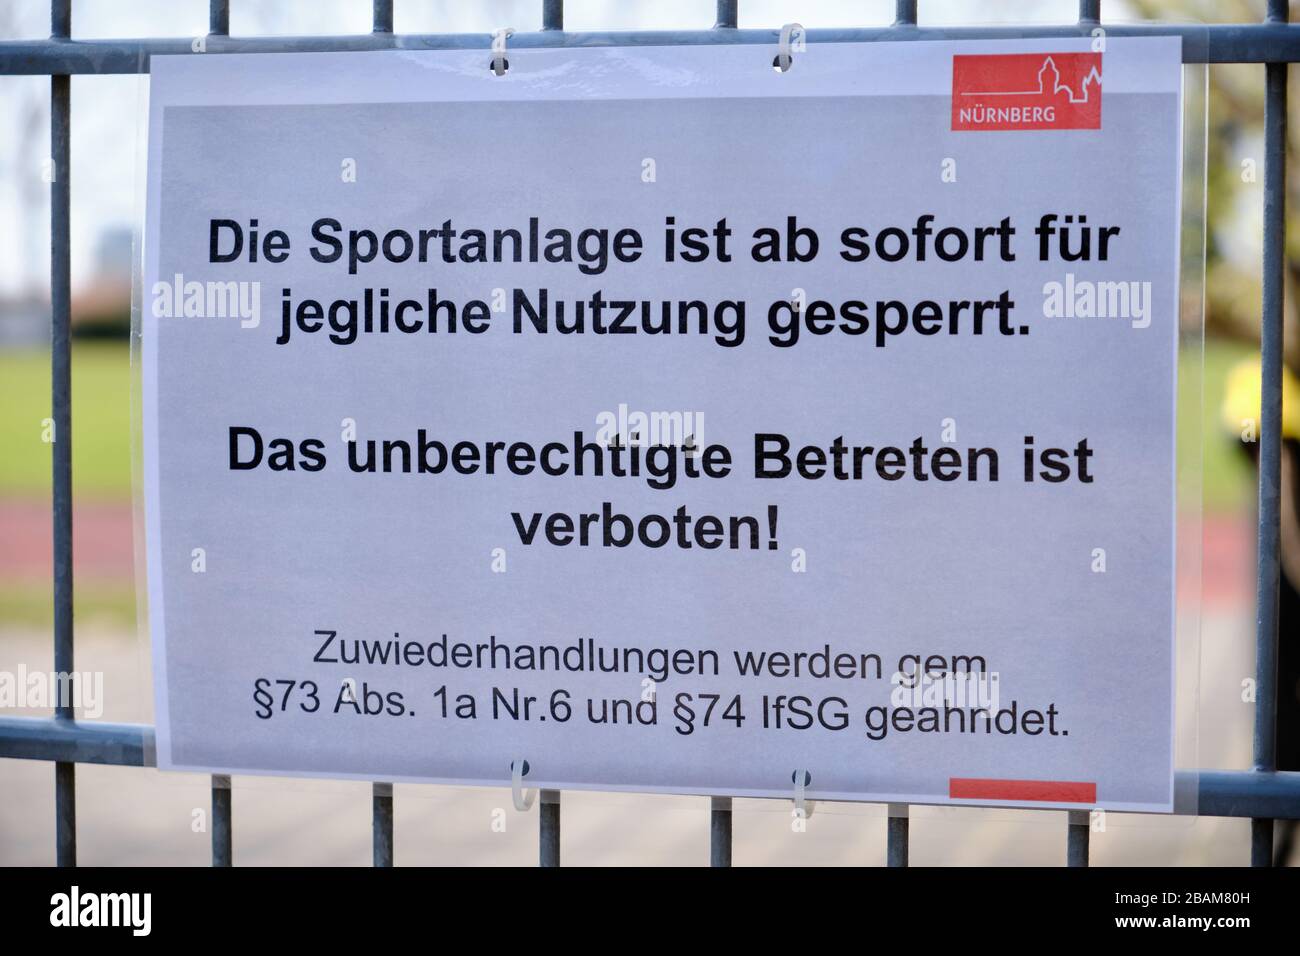 Nuremberg, Alemania - 27 de marzo de 2020: Cierre de señal diciendo a la gente que la instalación deportiva está inmediatamente cerrado para cualquier tipo de uso y h Foto de stock